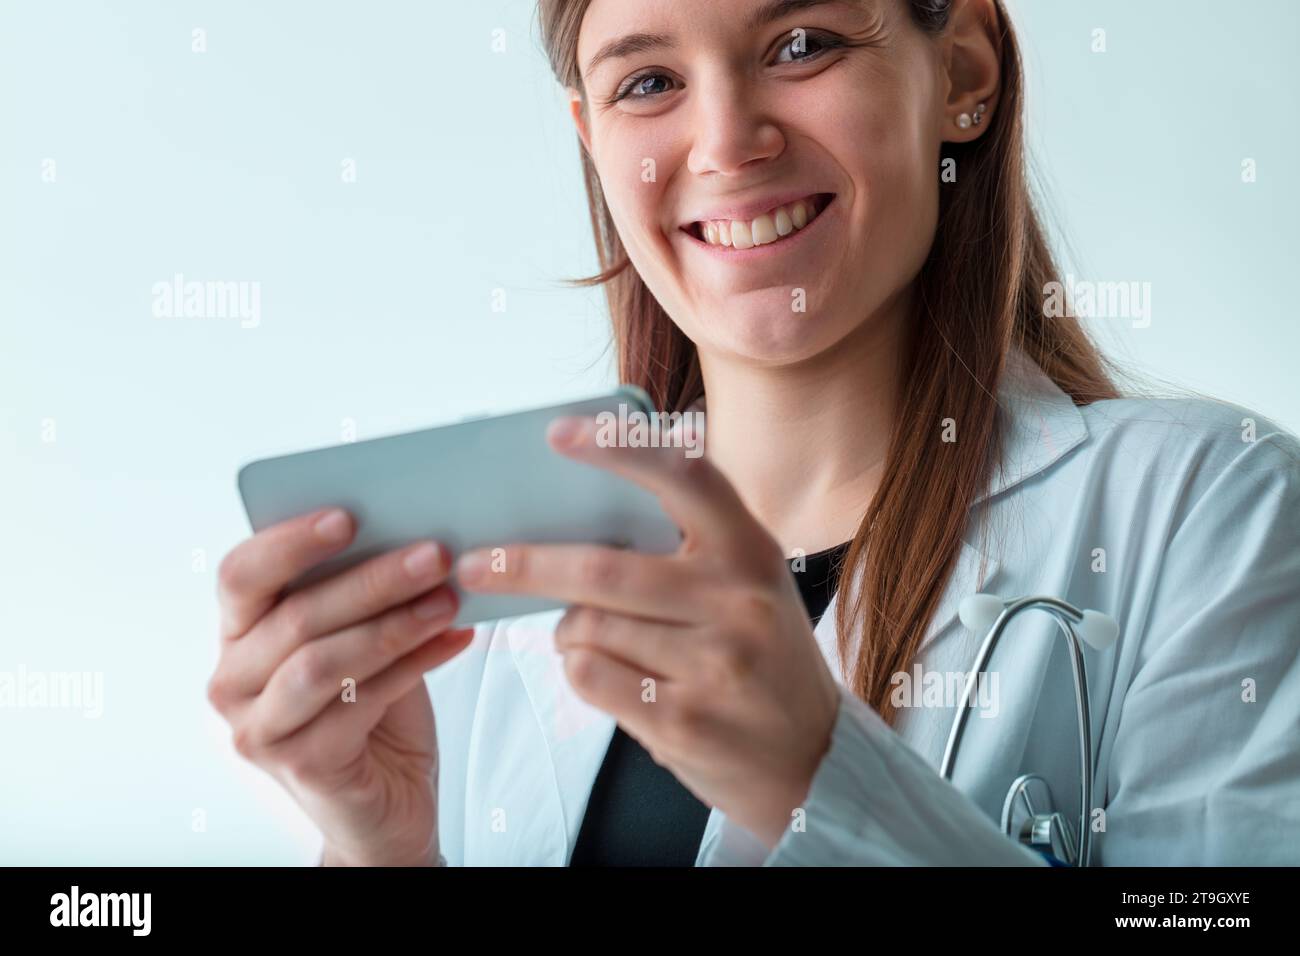 Ein optimistischer junger Mediziner wird mit einem Smartphone erfasst, was die dynamische und vernetzte Natur der modernen Medizin widerspiegelt Stockfoto